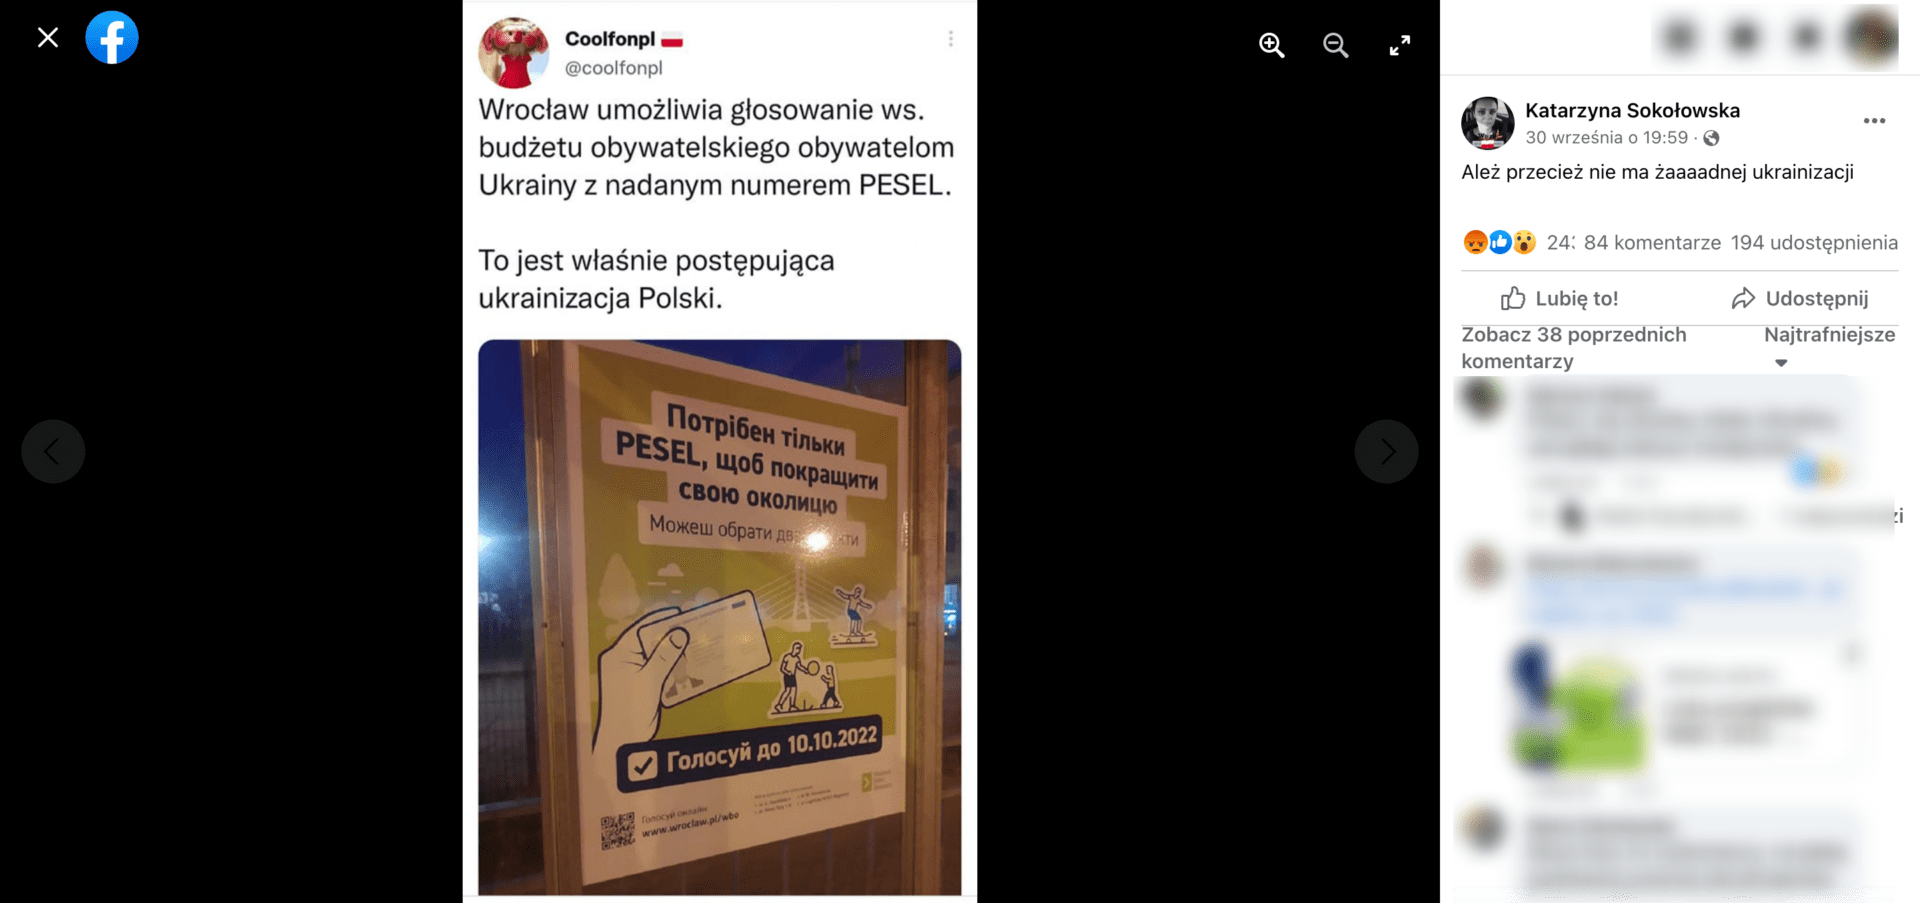 Zrzut ekranu z posta na Facebooku, w którym zasugerowano „ukrainizację” Polski z powodu przepisów w sprawie budżetu obywatelskiego. Wpis zdobył ponad 240 reakcji, ponad 80 komentarzy i ponad 190 udostępnień.